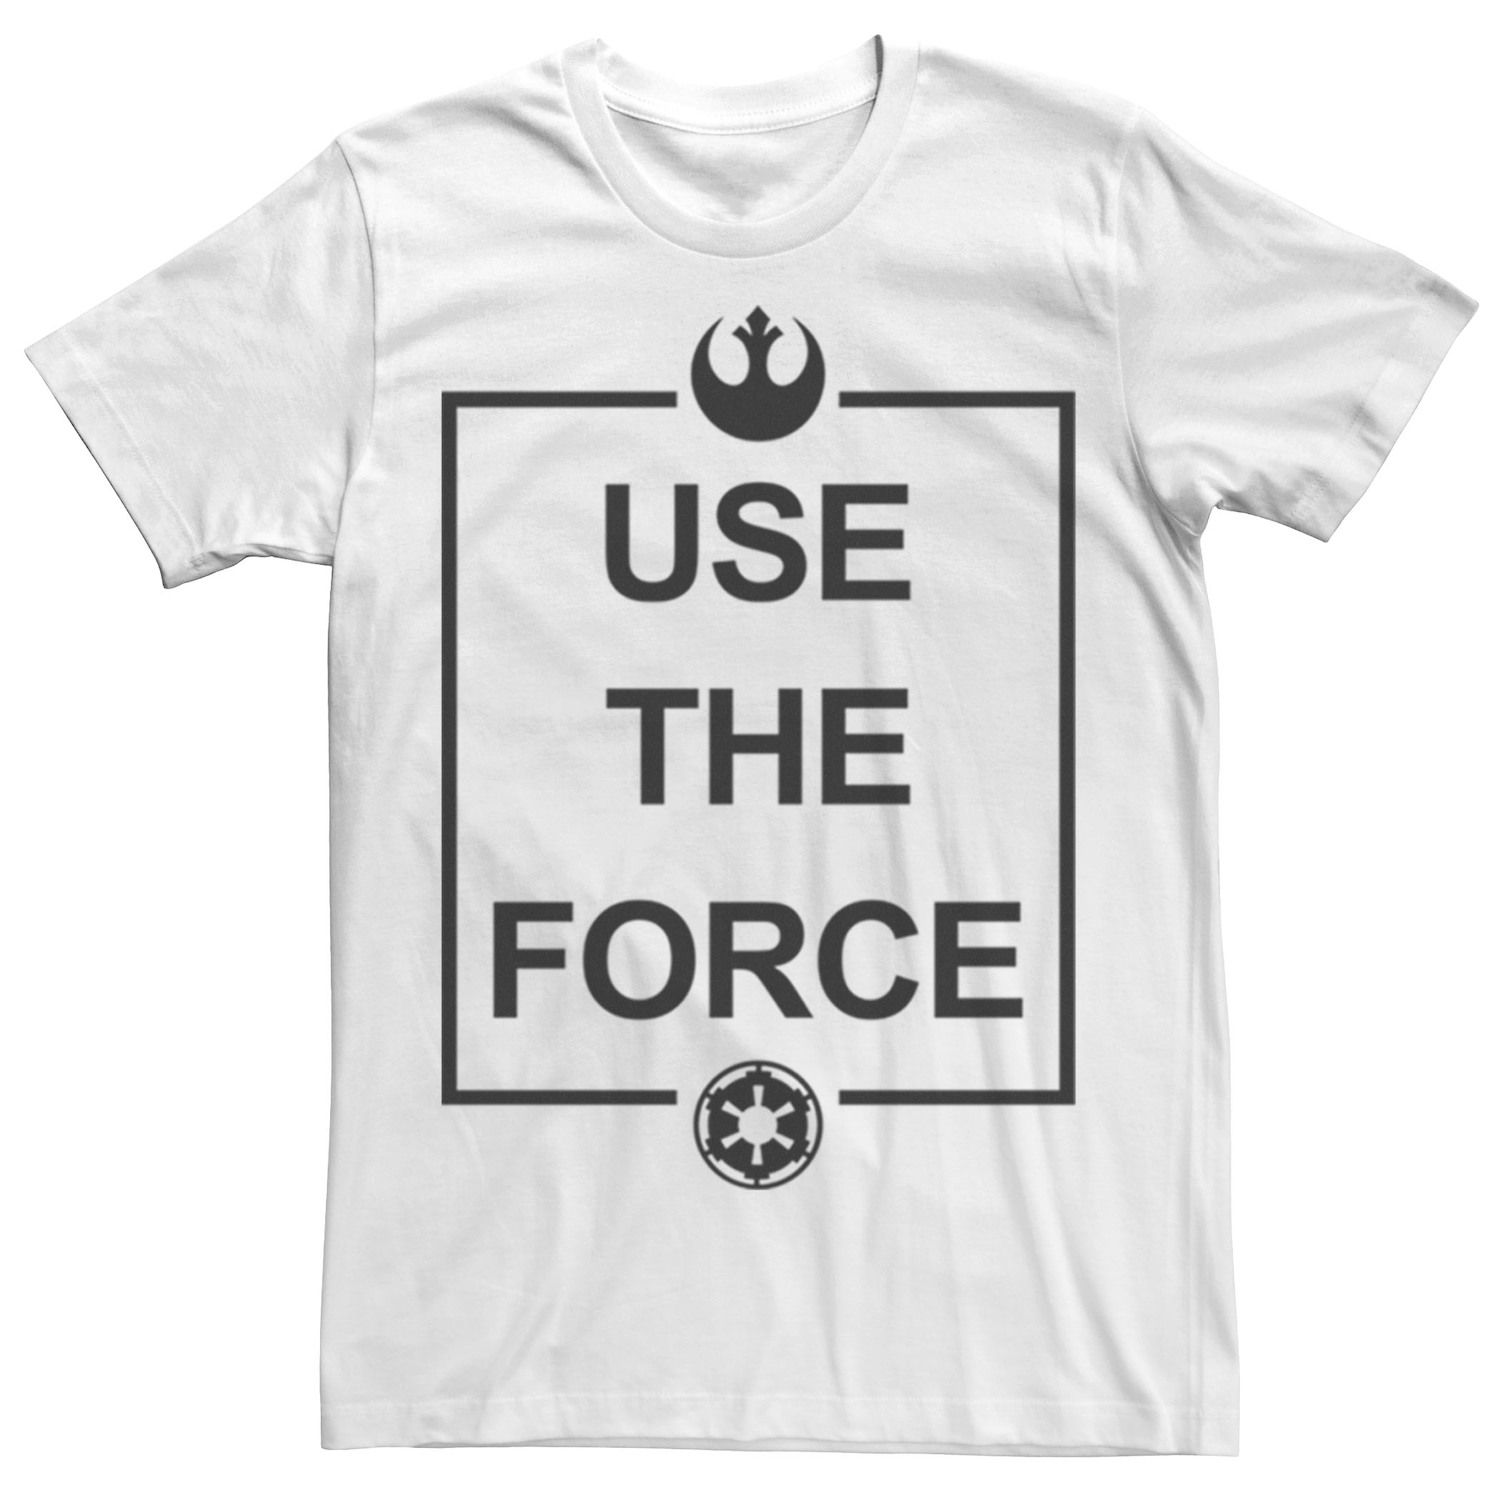 цена Мужская футболка с простым текстовым логотипом «Звездные войны Use The Force» Licensed Character